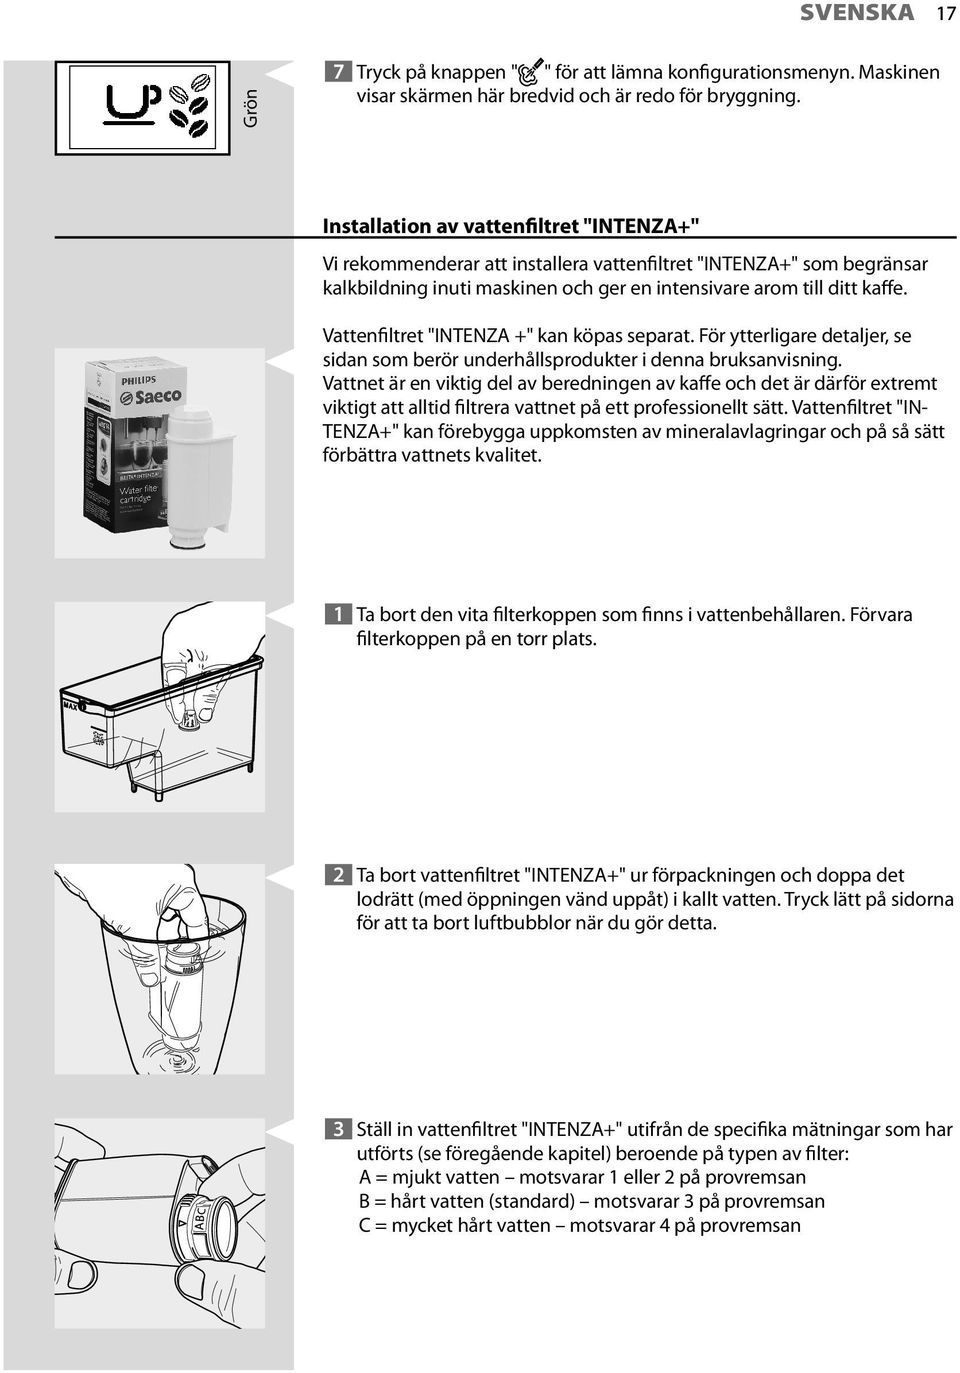 Vattenfiltret "INTENZA +" kan köpas separat. För ytterligare detaljer, se sidan som berör underhållsprodukter i denna bruksanvisning.